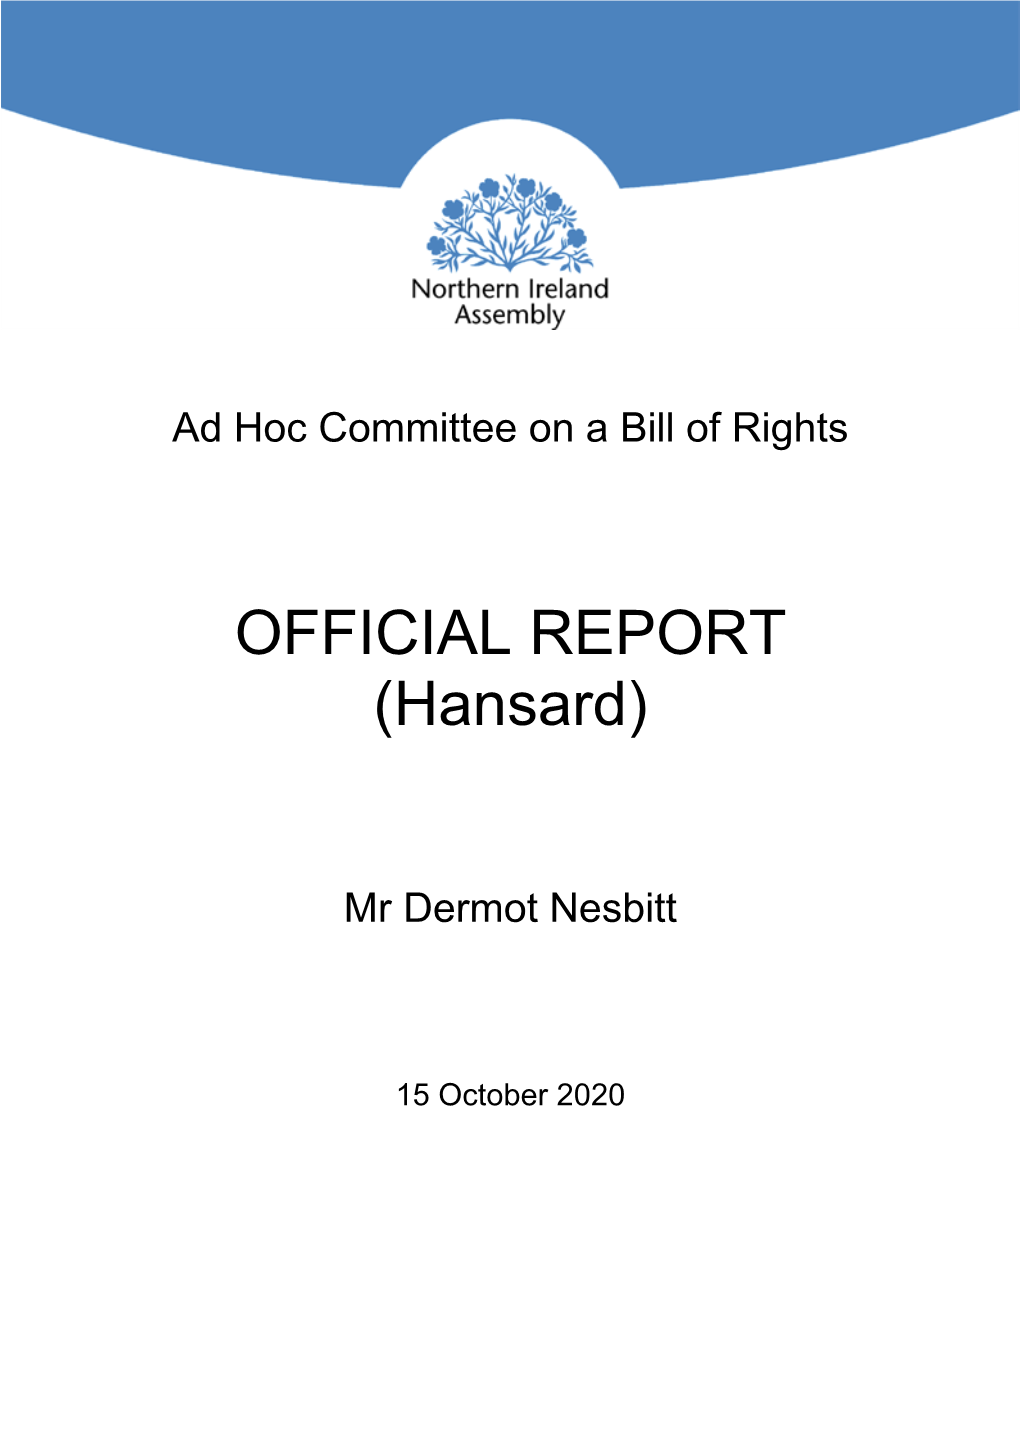 OFFICIAL REPORT (Hansard)